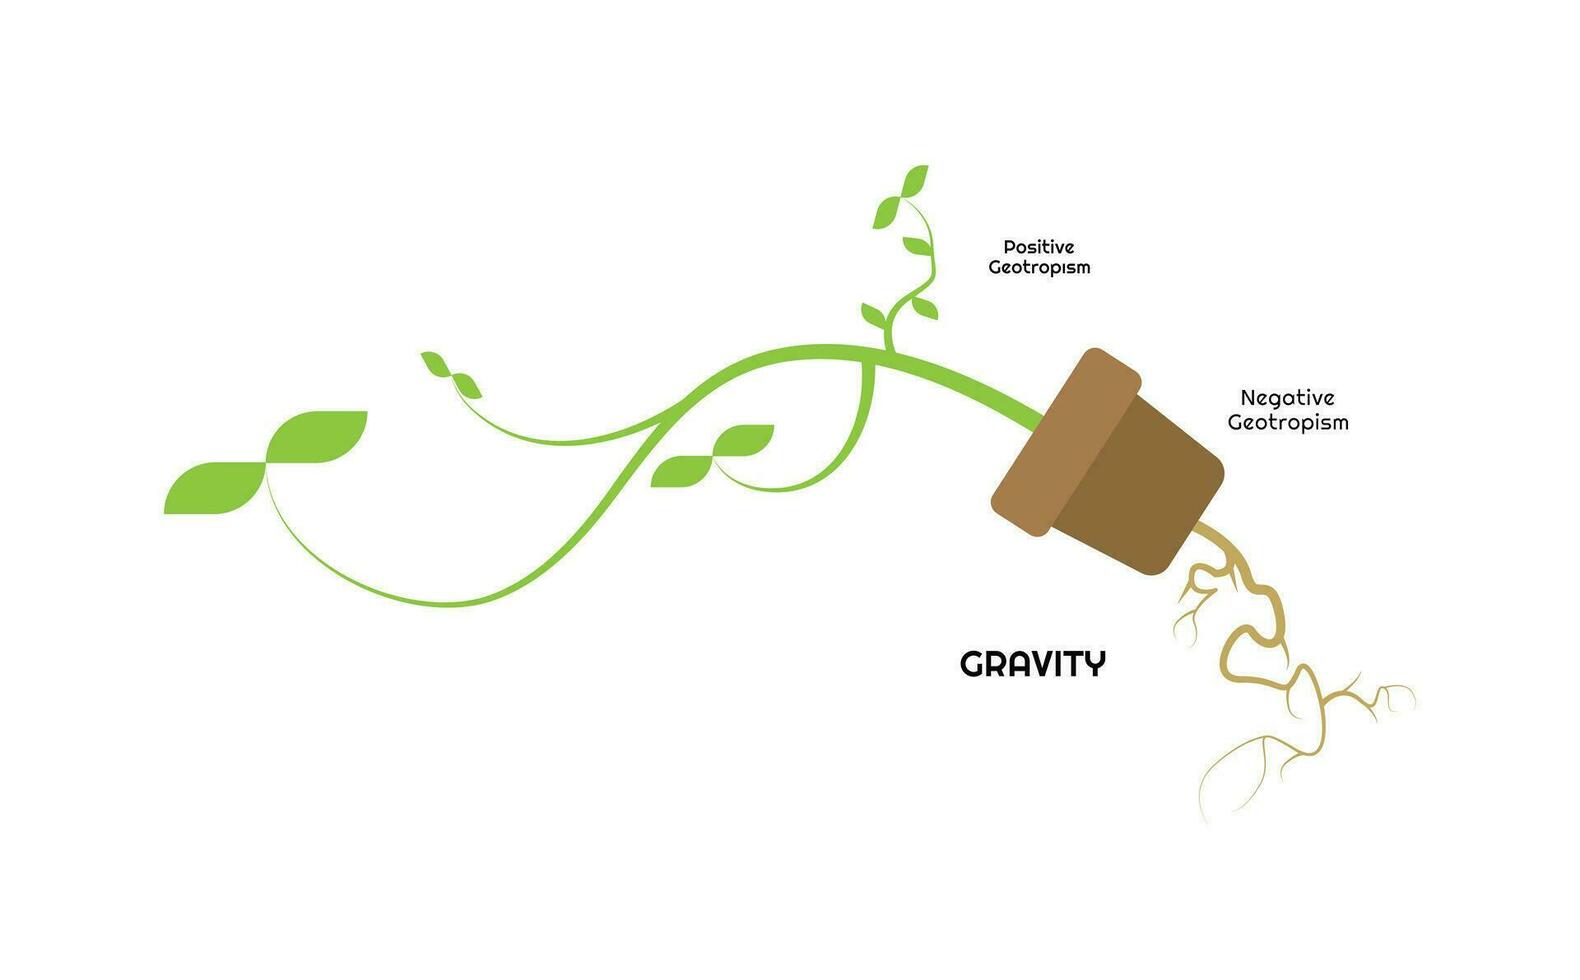 científico diseño de geotropismo gravitropismo proceso. el planta diferencial crecimiento en respuesta a gravedad. vector